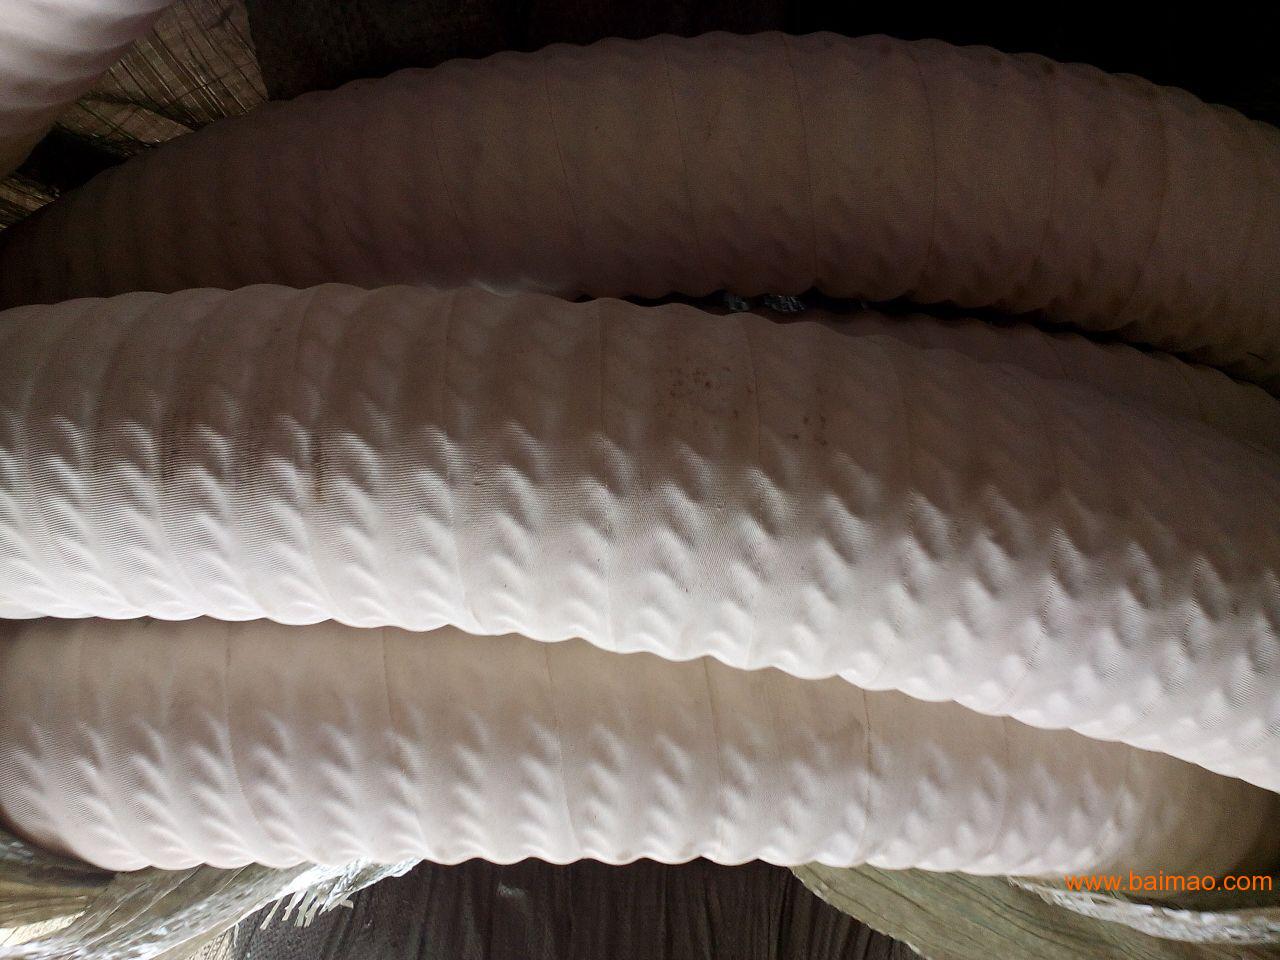 厂家优惠供应白色食品胶管 夹布食品胶管 食品级胶管